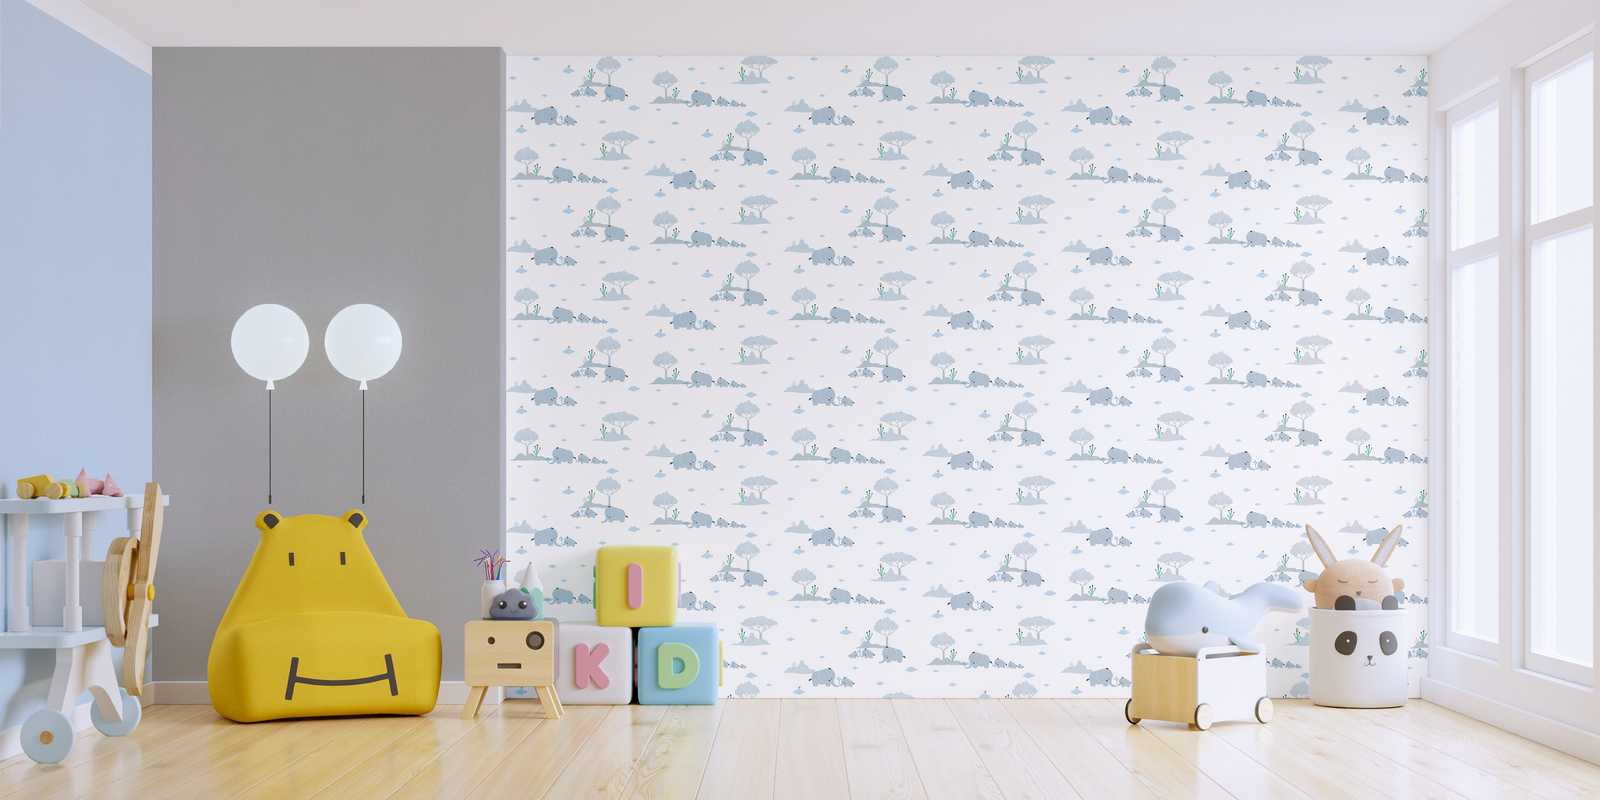             Wallpaper Nursery boys elephants & landscape - blue, grey, white
        